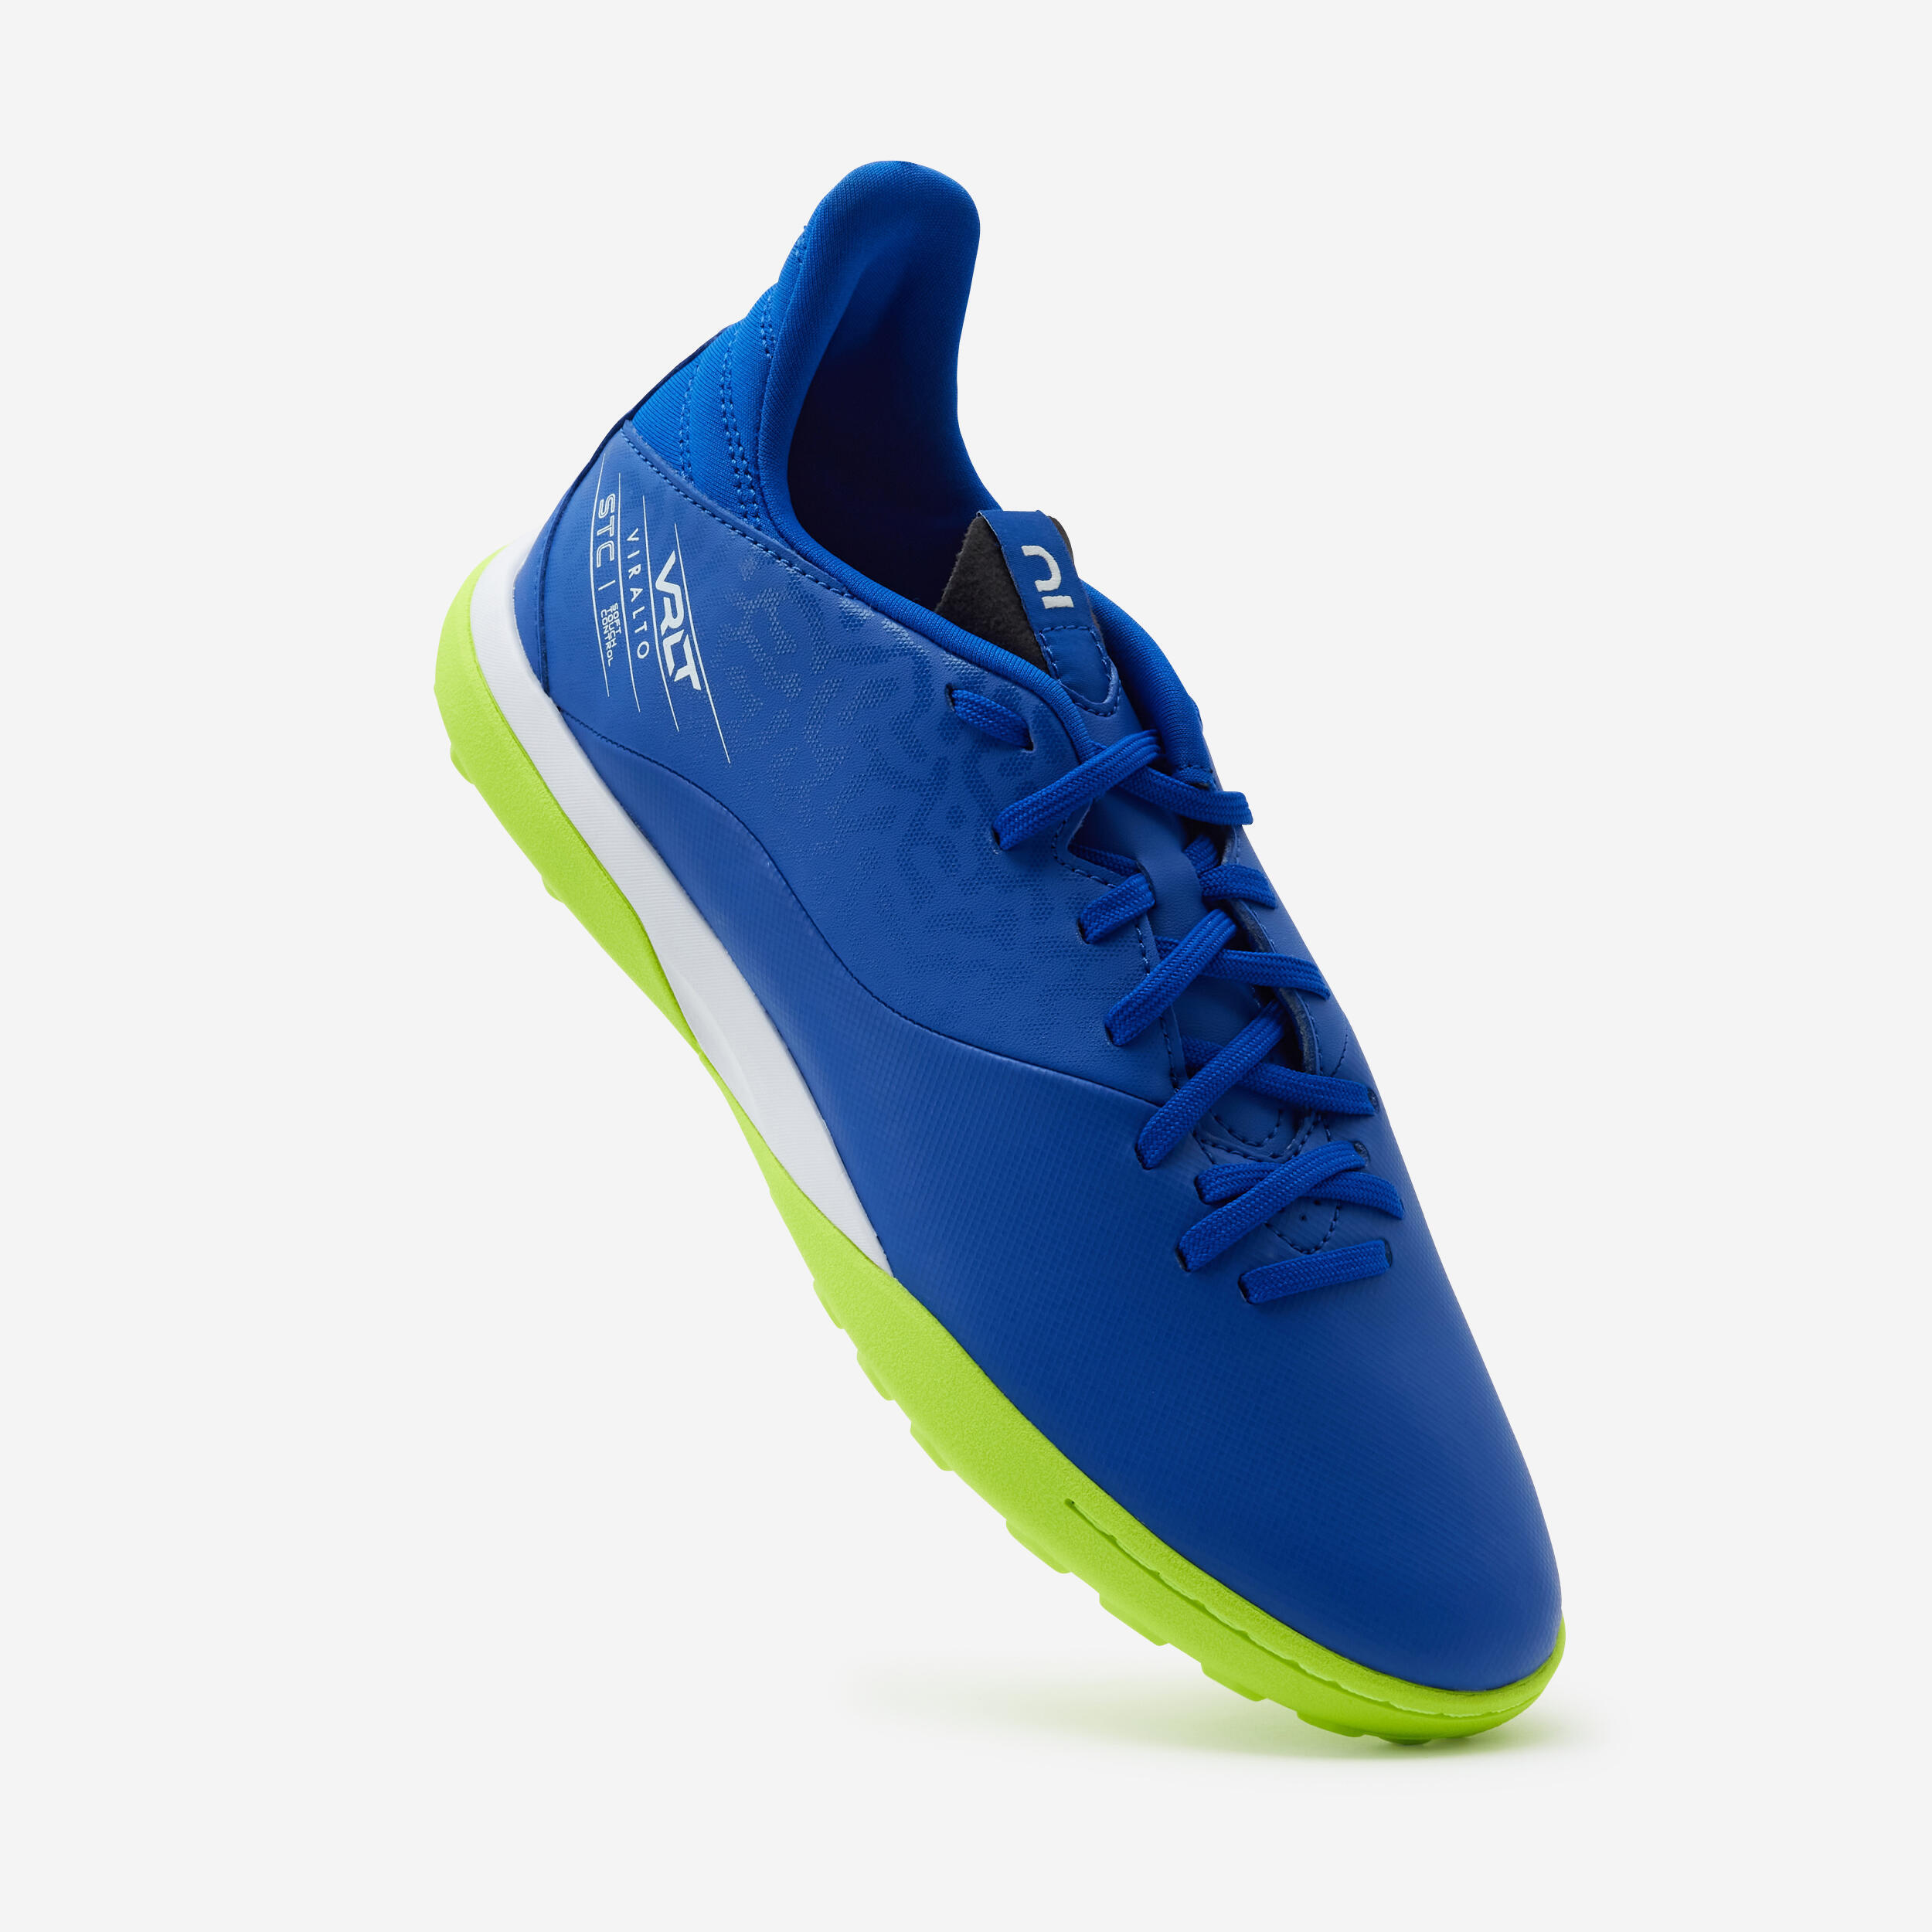 Turf Football Boots Viralto I TF - Blue/Yellow 4/8